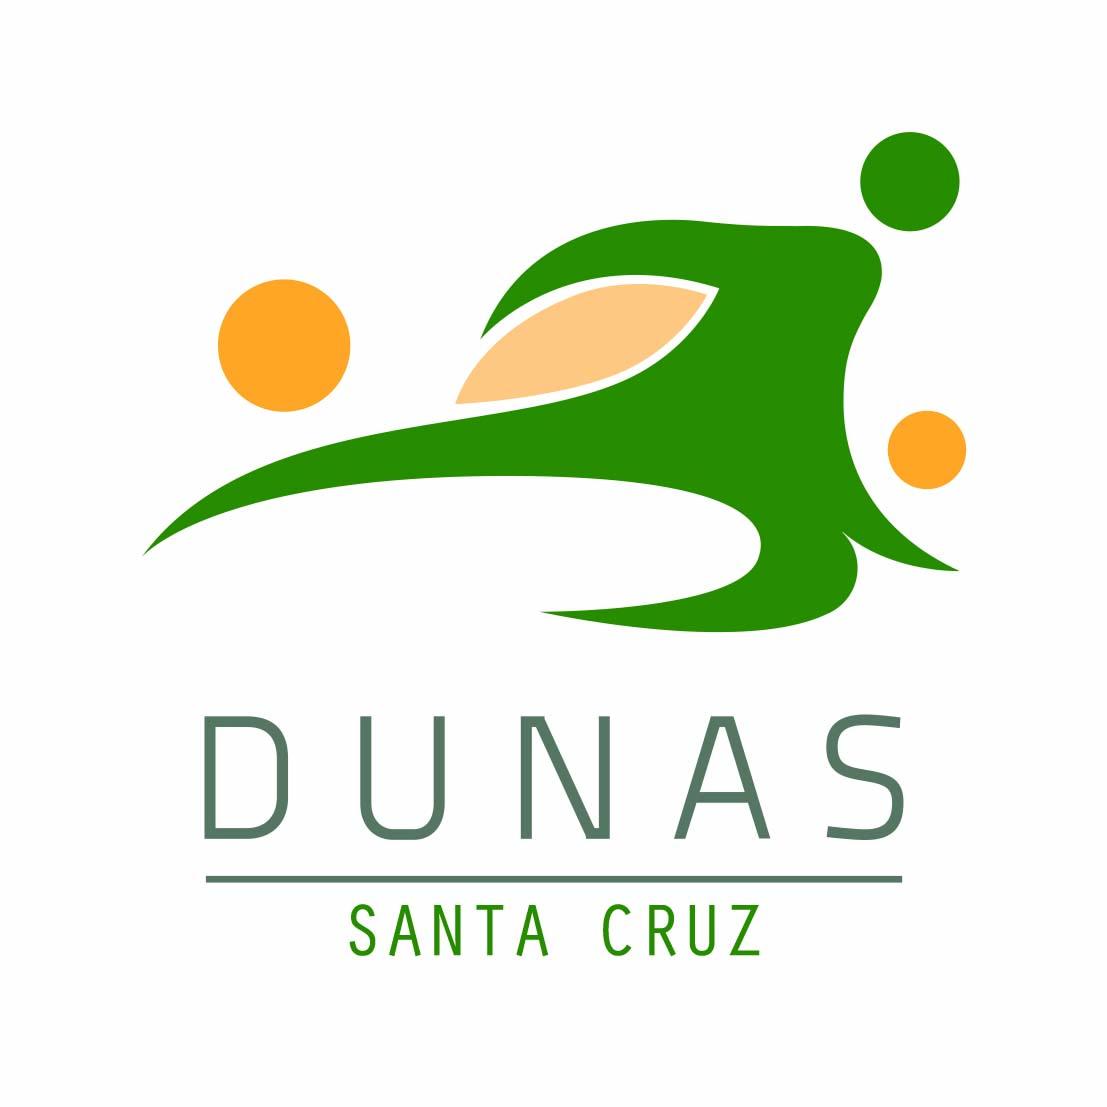 Dunas Santa Cruz